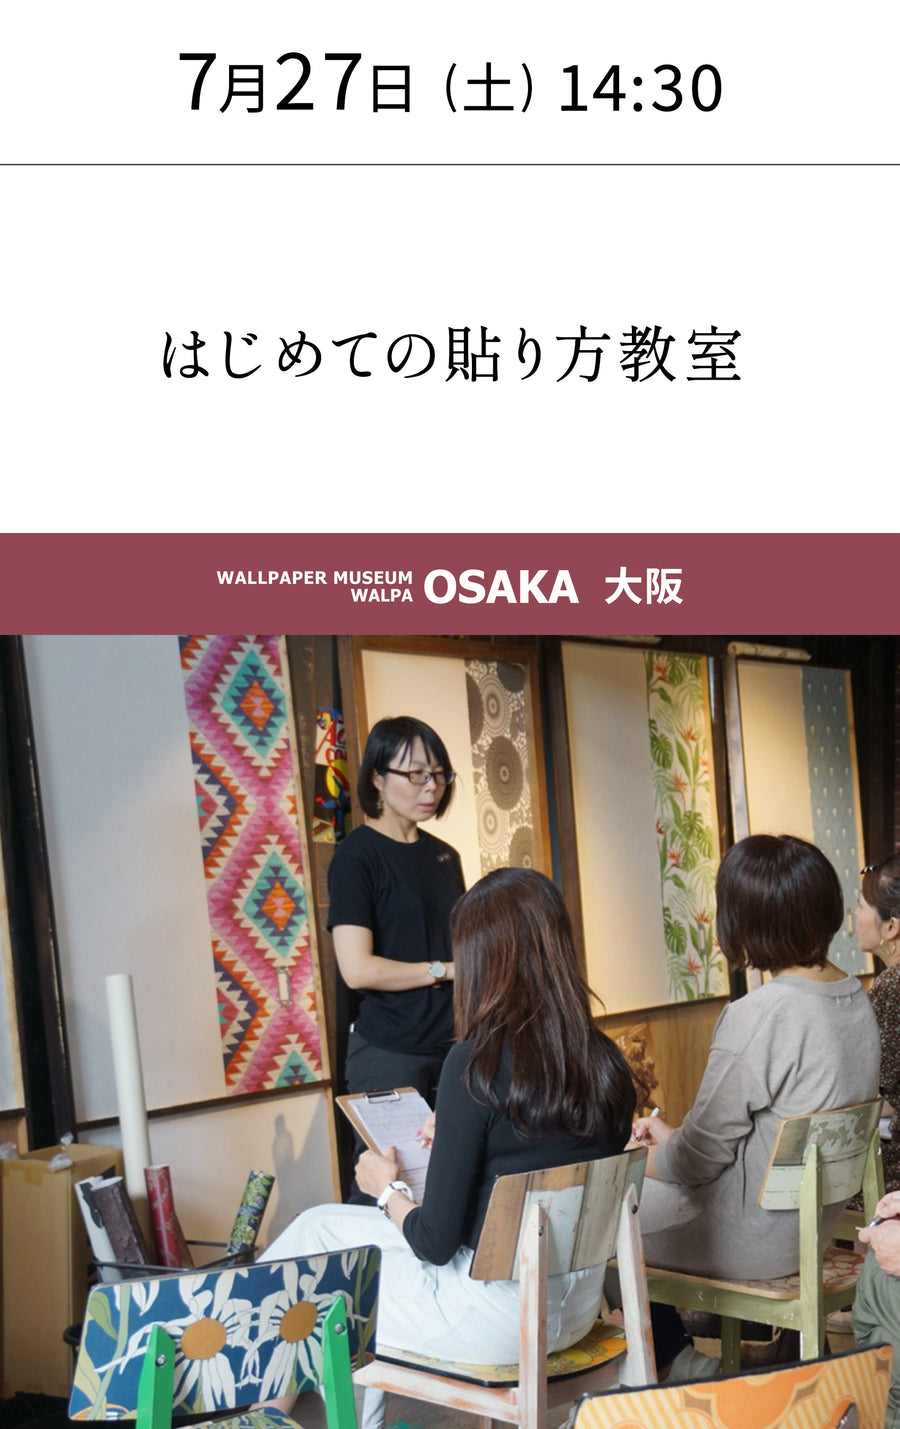 7月27日(土) 14:30～WALLPAPER MUSEUM WALPA / OSAKA ワークショップ 「はじめての貼り方教室」